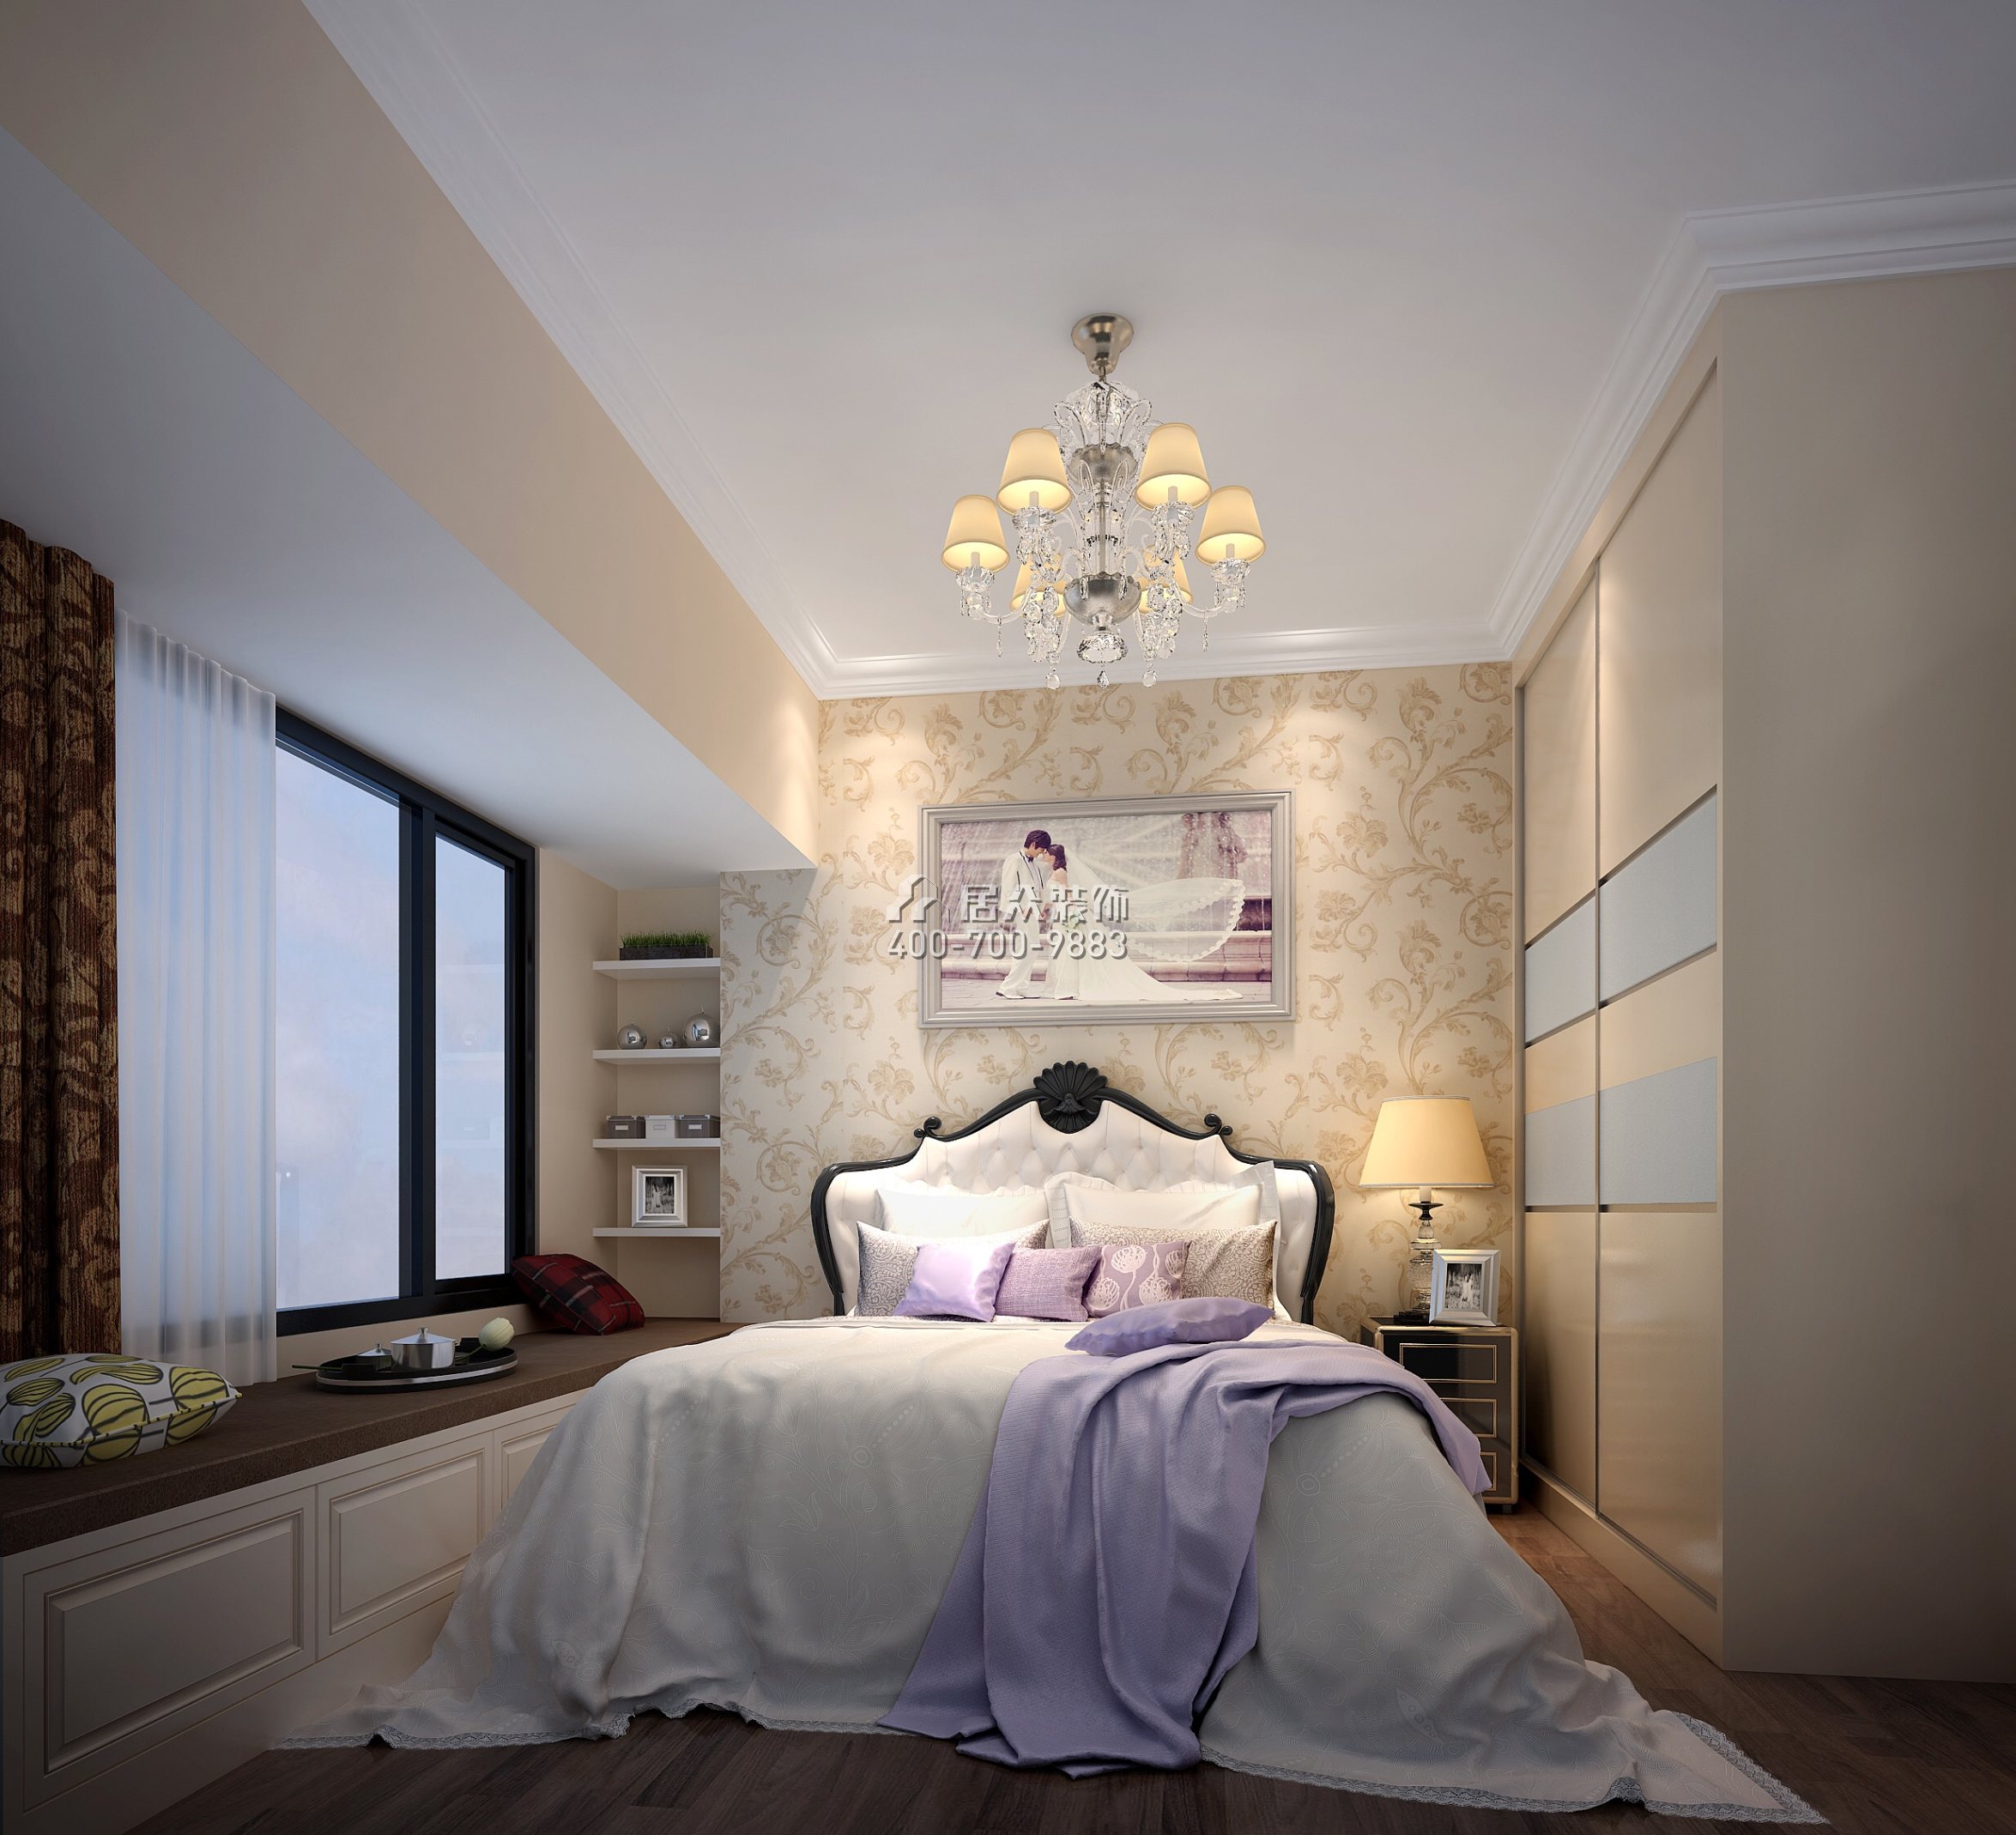 乐城80平方米欧式风格平层户型卧室装修效果图